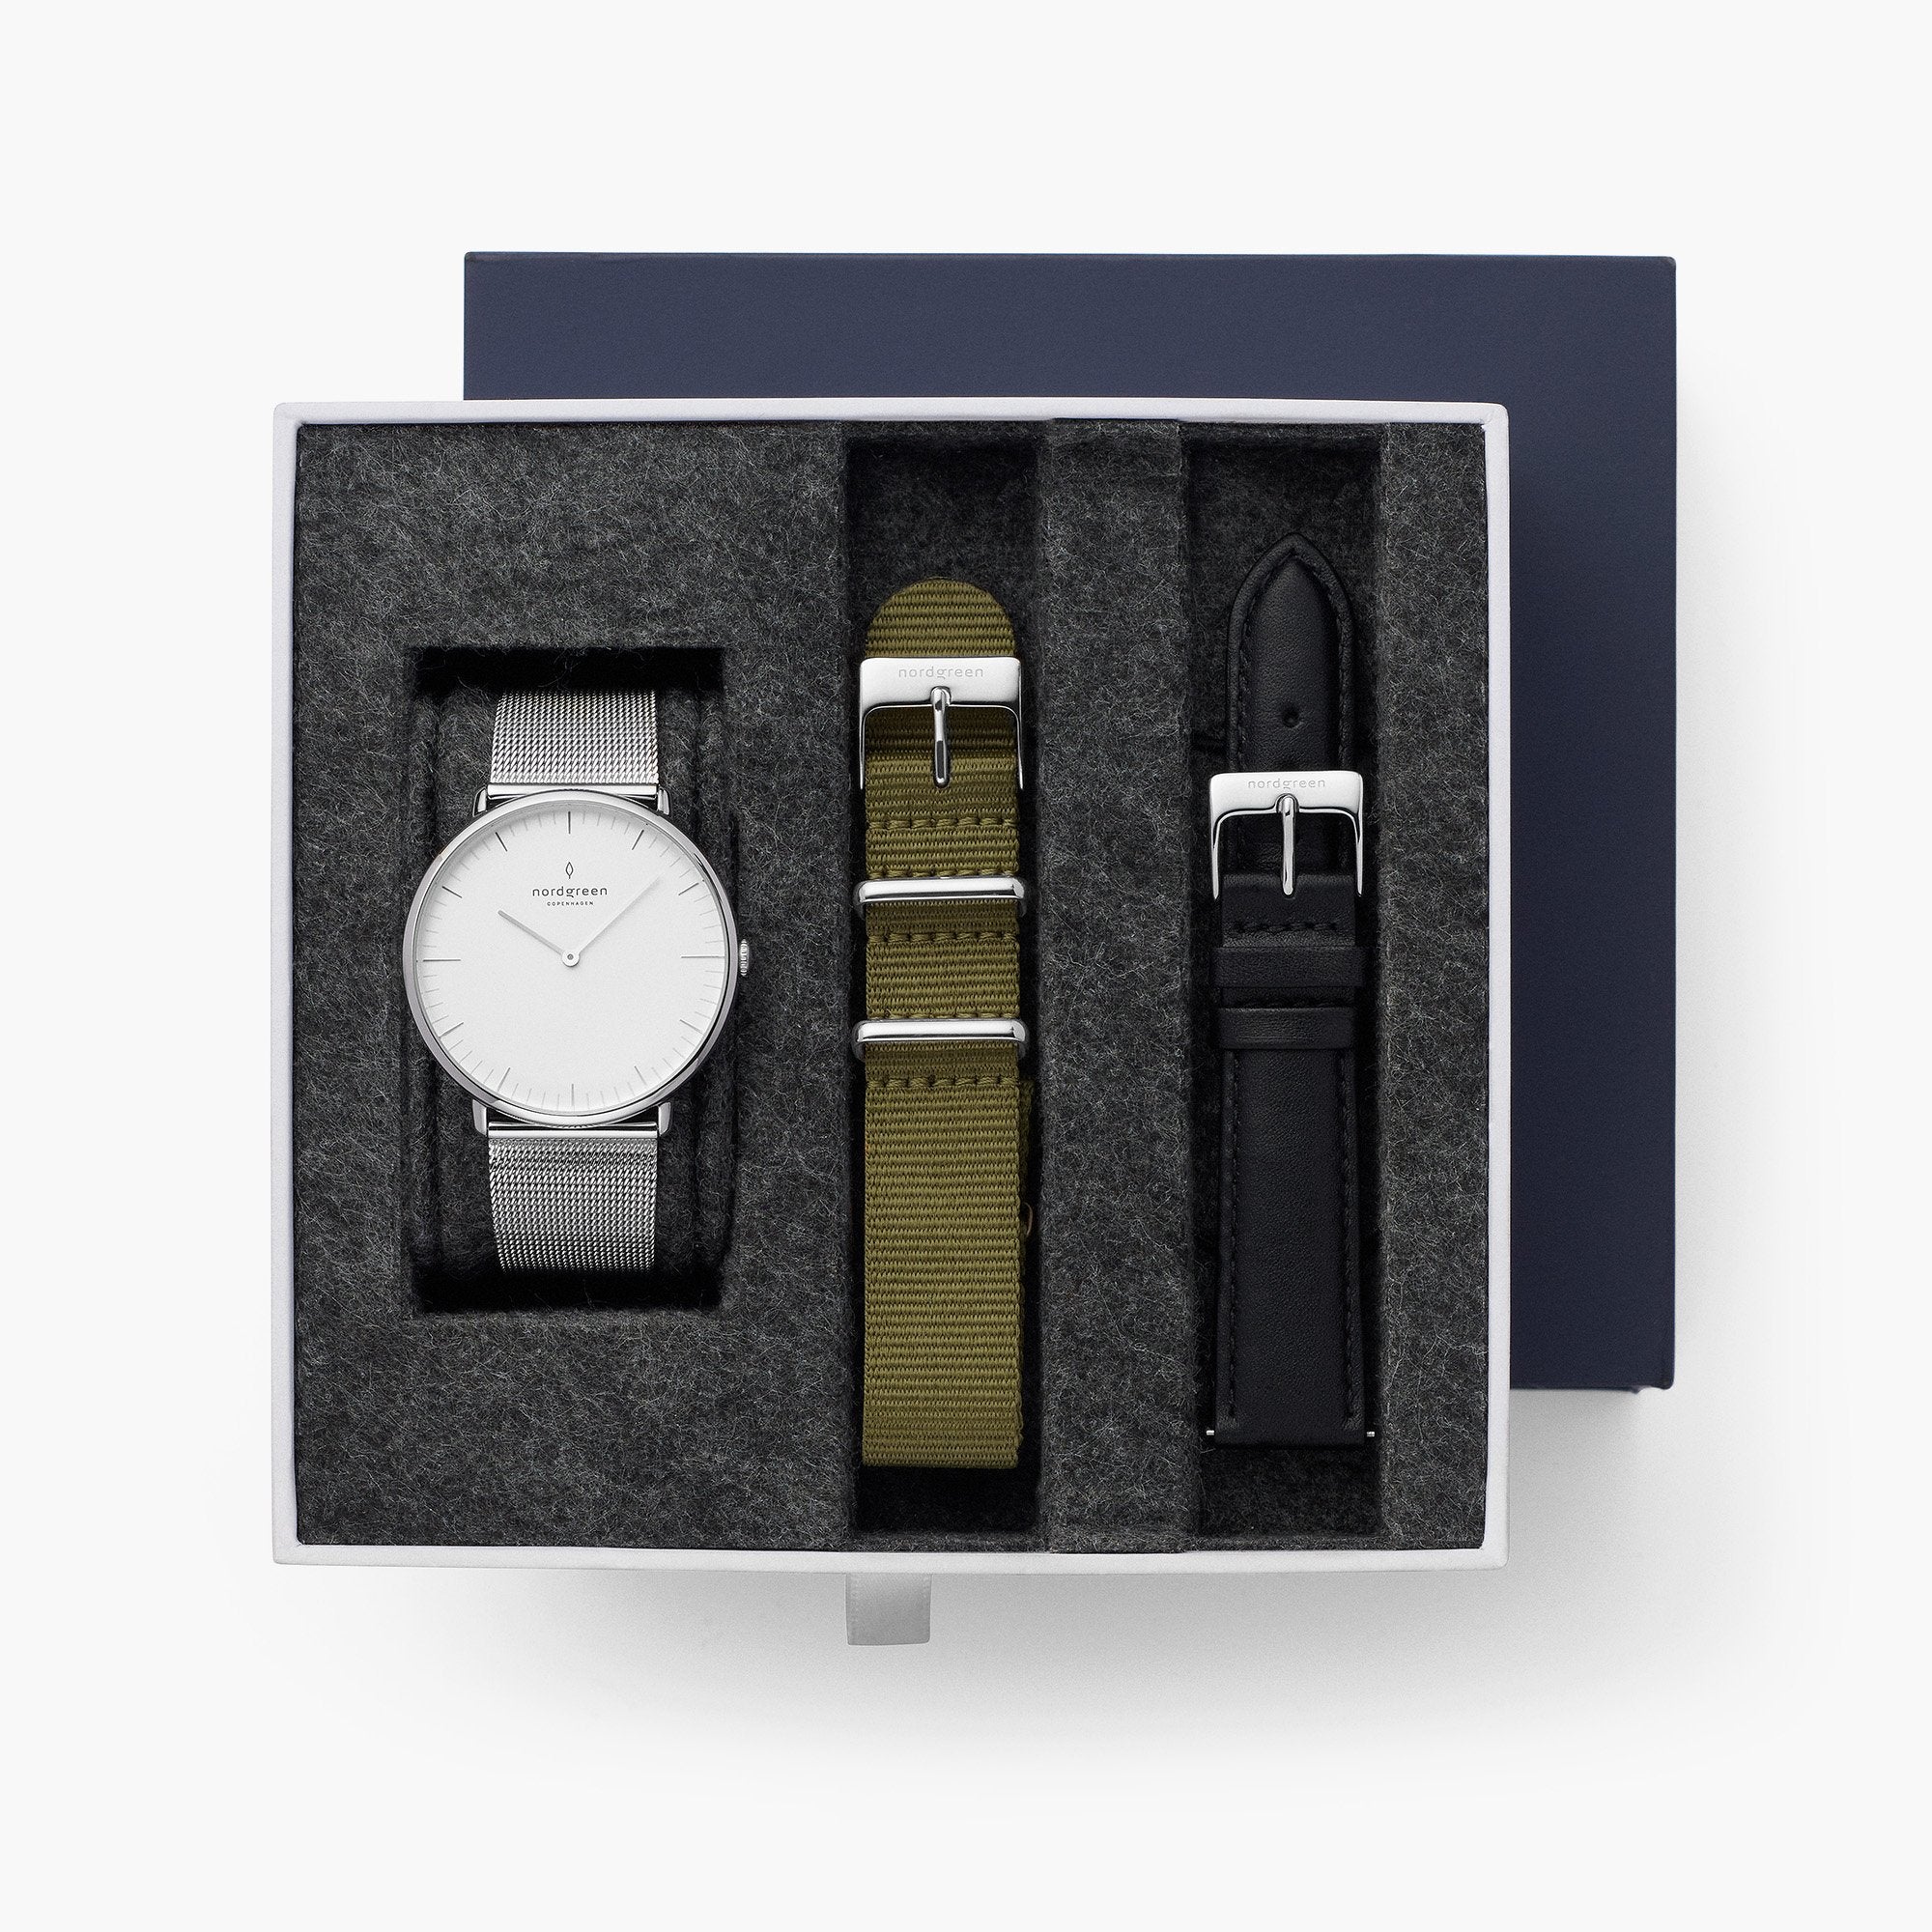 薄い腕時計で人気のコレクション 北欧ブランドnordgreen